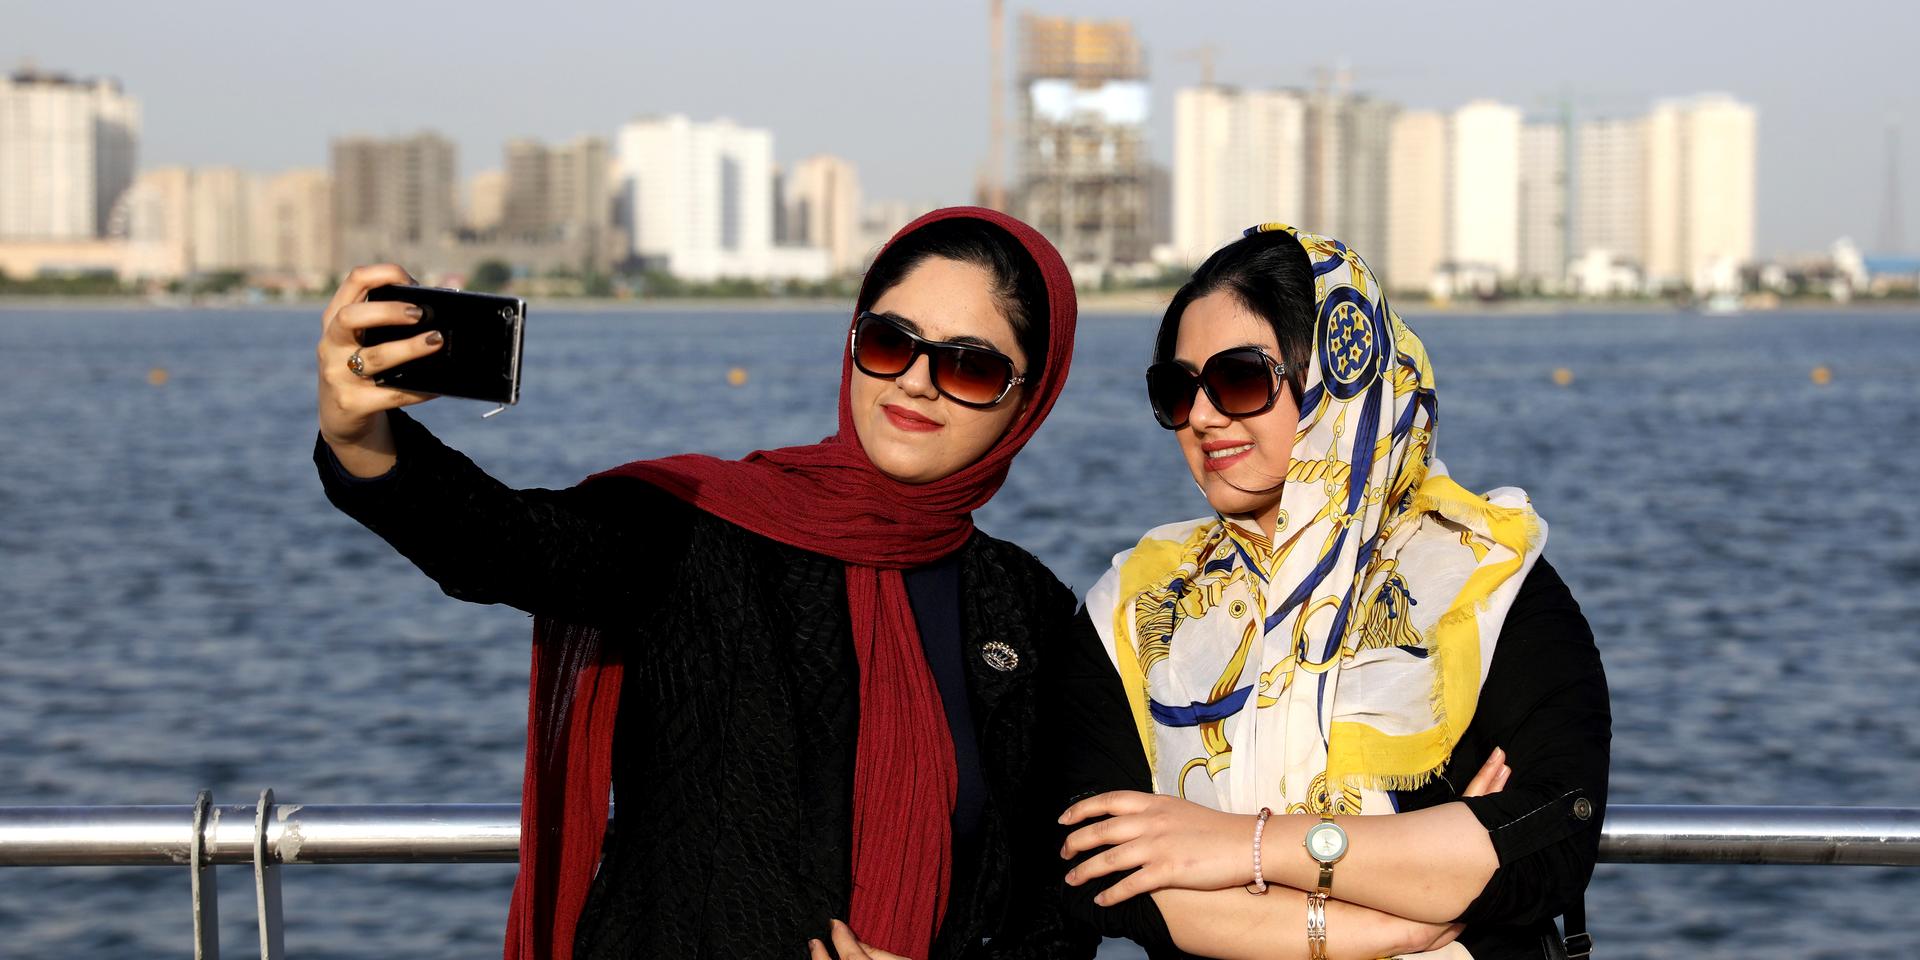 Regeringen i Iran planerar att använda sig av ansiktsigenkänning i kollektivtrafiken för att säkerställa att kvinnor täcker sig enligt de nya hijab-föreskrifterna. Arkivbild.